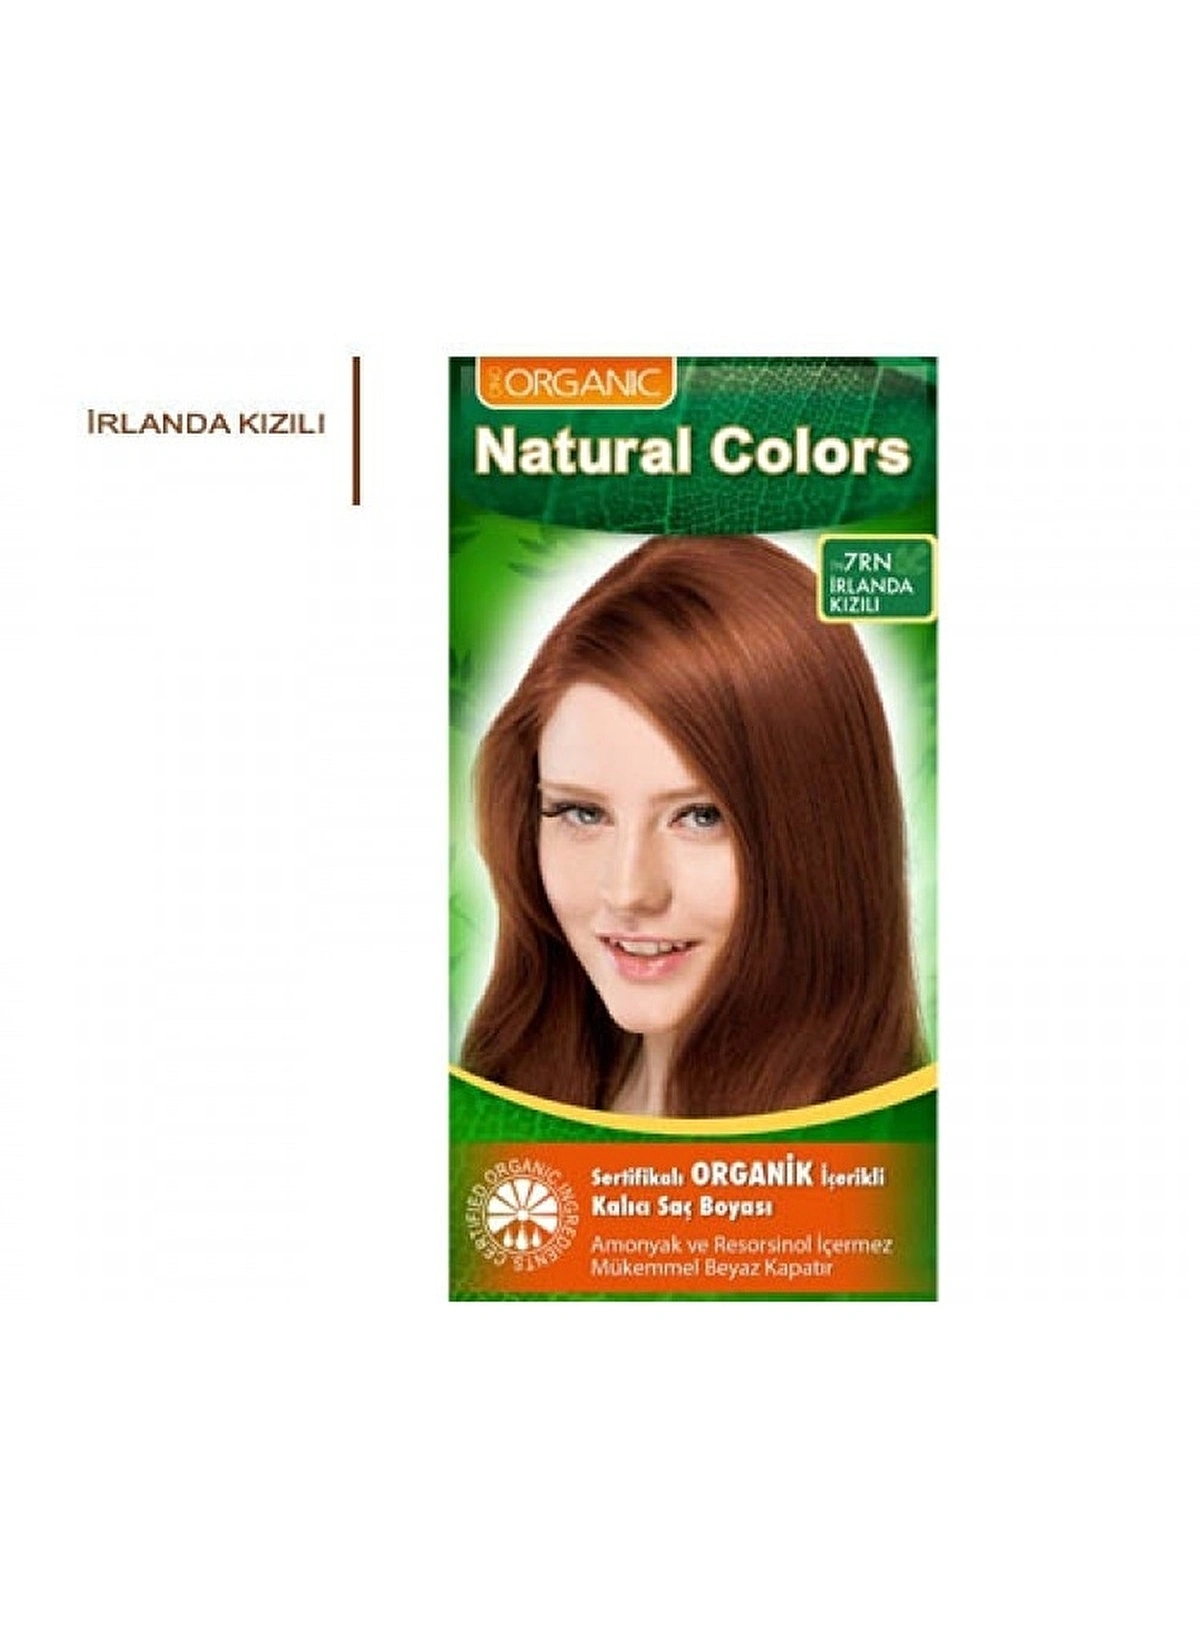 Natural Colors Organik İçerikli Saç Boyası 7RN İrlanda Kızılı - Thumbnail